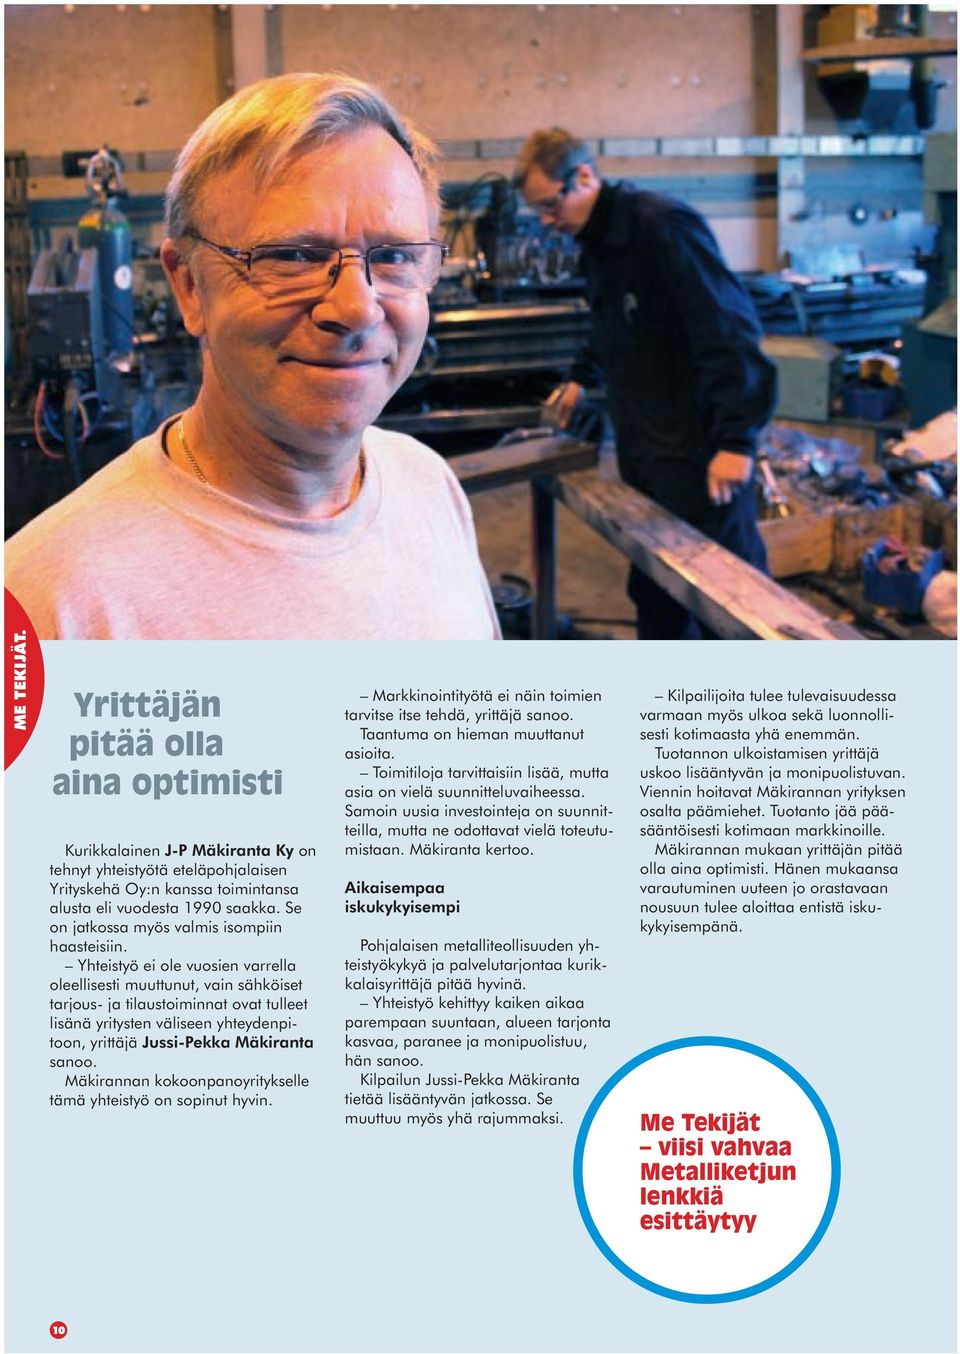 Yhteistyö ei ole vuosien varrella oleellisesti muuttunut, vain sähköiset tarjous- ja tilaustoiminnat ovat tulleet lisänä yritysten väliseen yhteydenpitoon, yrittäjä Jussi-Pekka Mäkiranta sanoo.